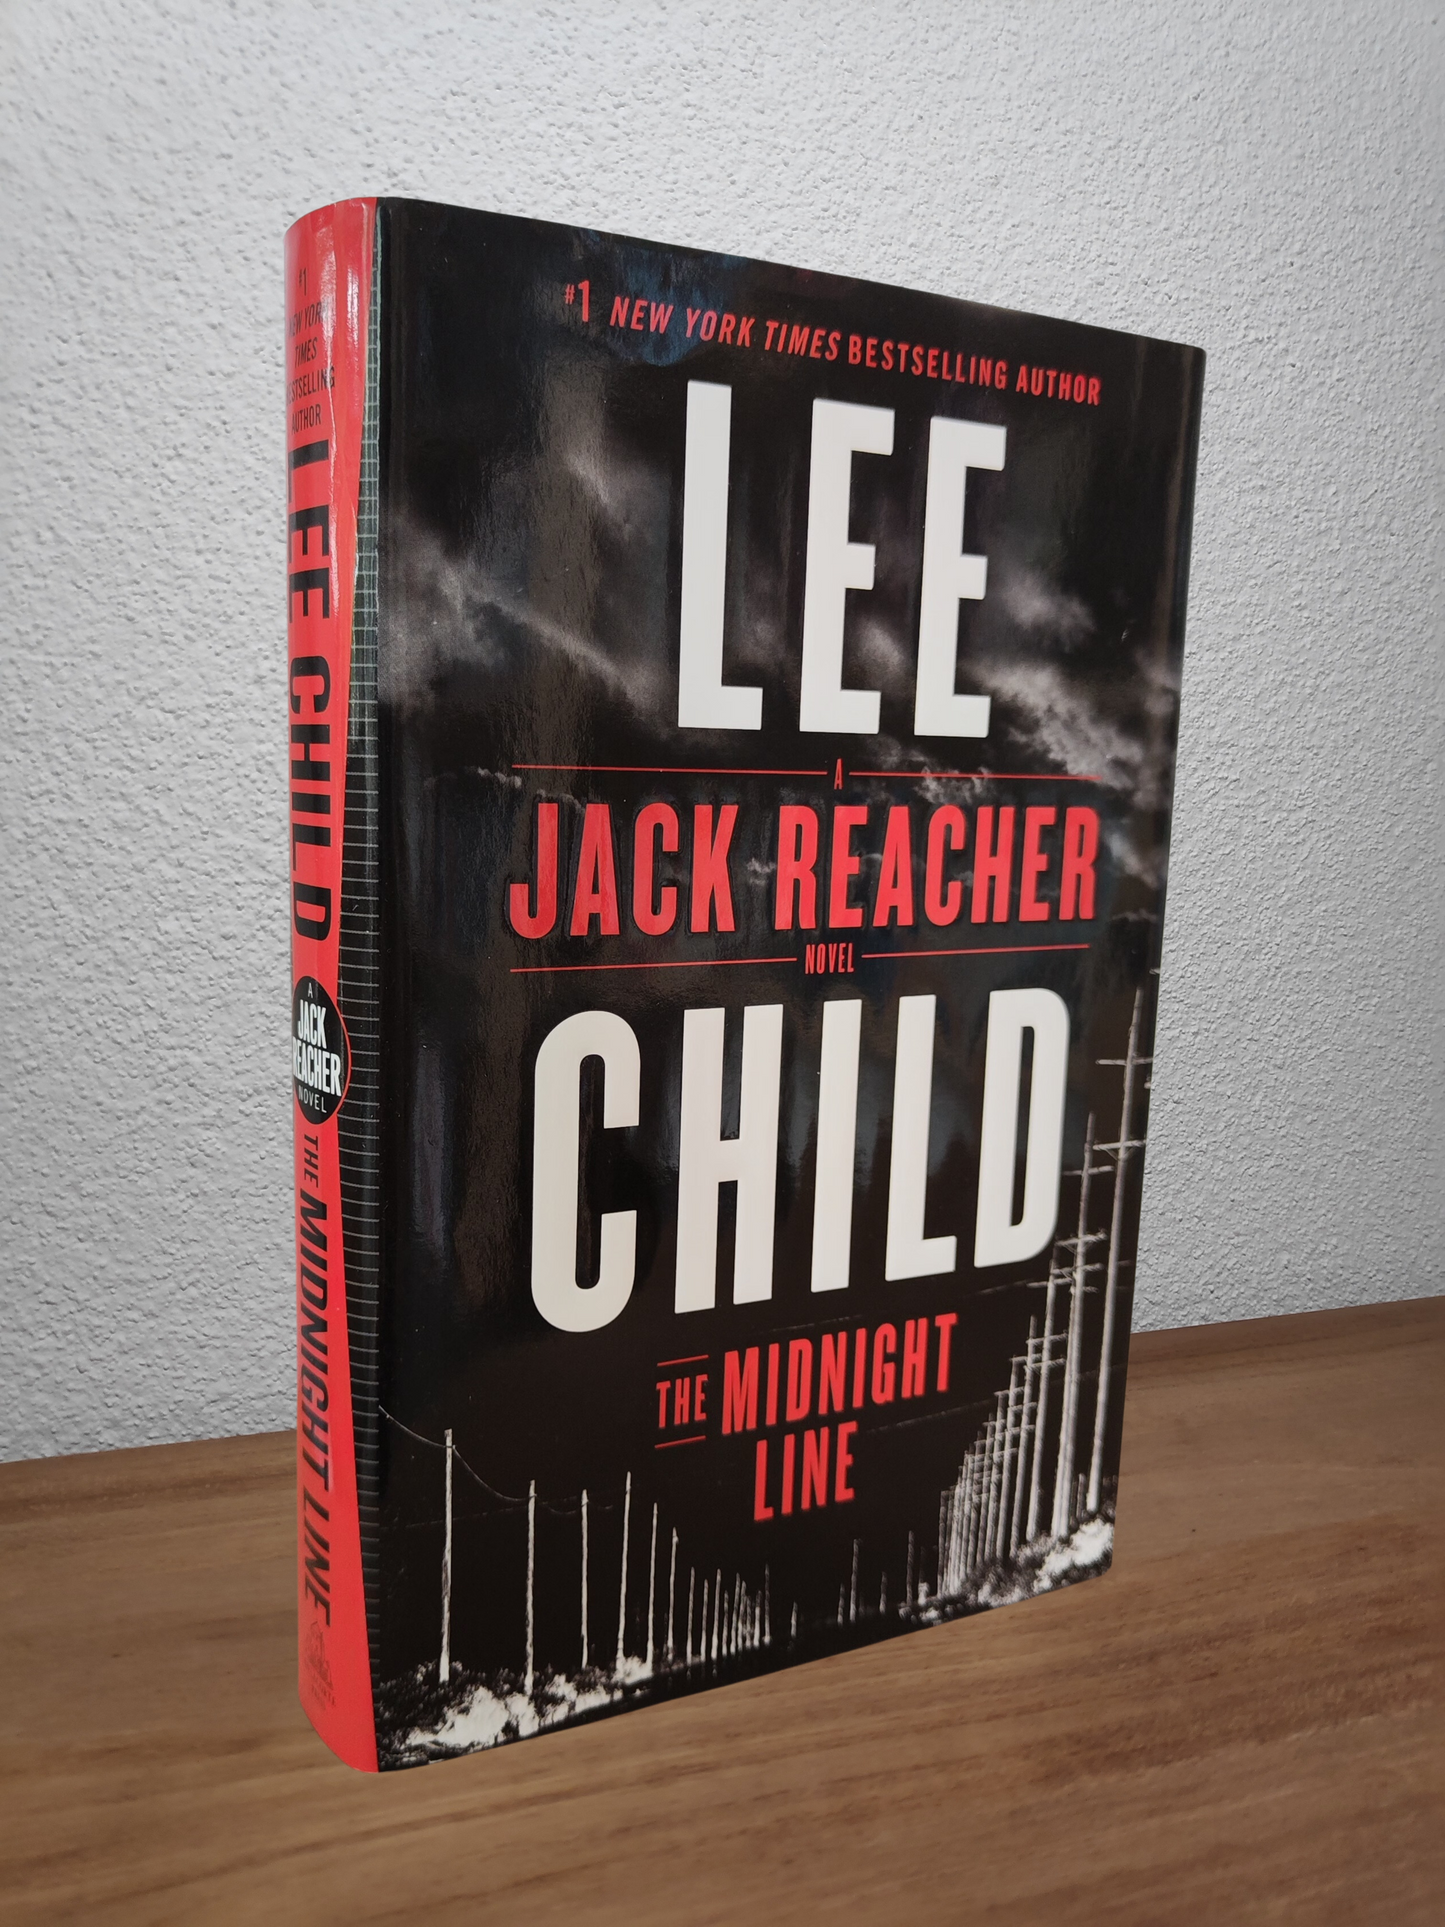 Lee Child - The Midnight Line (Jack Reacher #22)